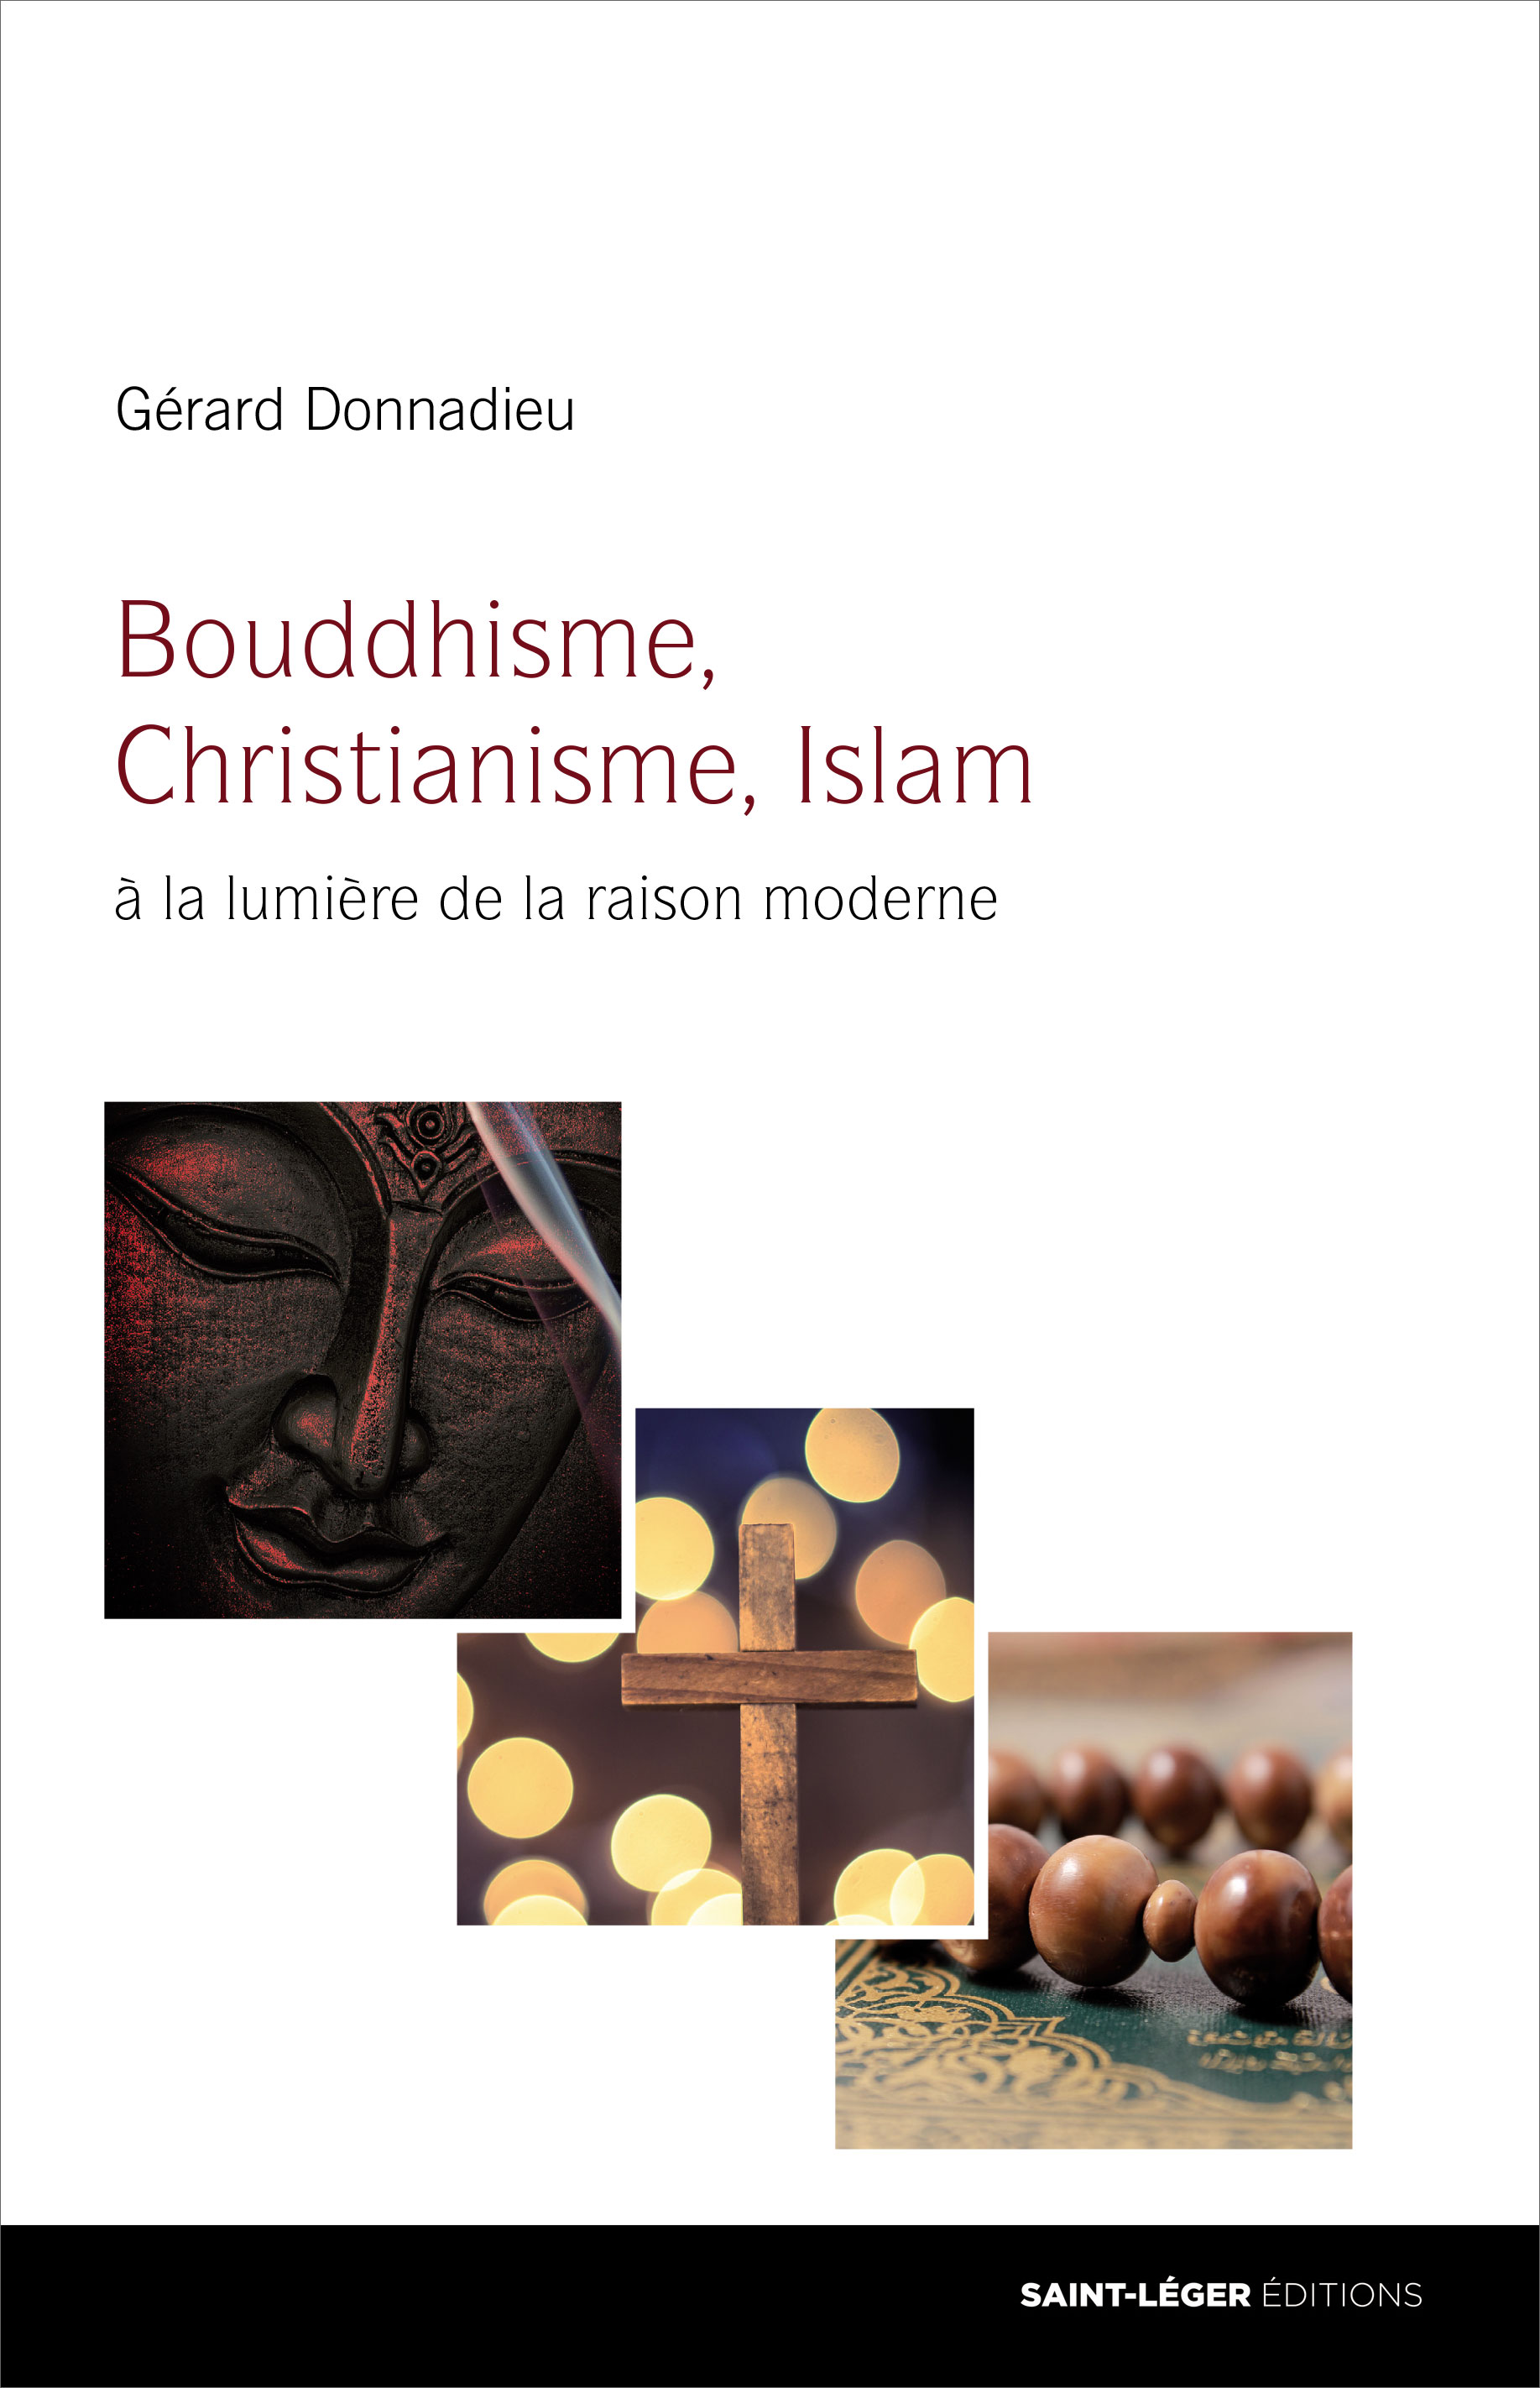 Gérard Donnadieu, Bouddhisme, Christianisme, Islam